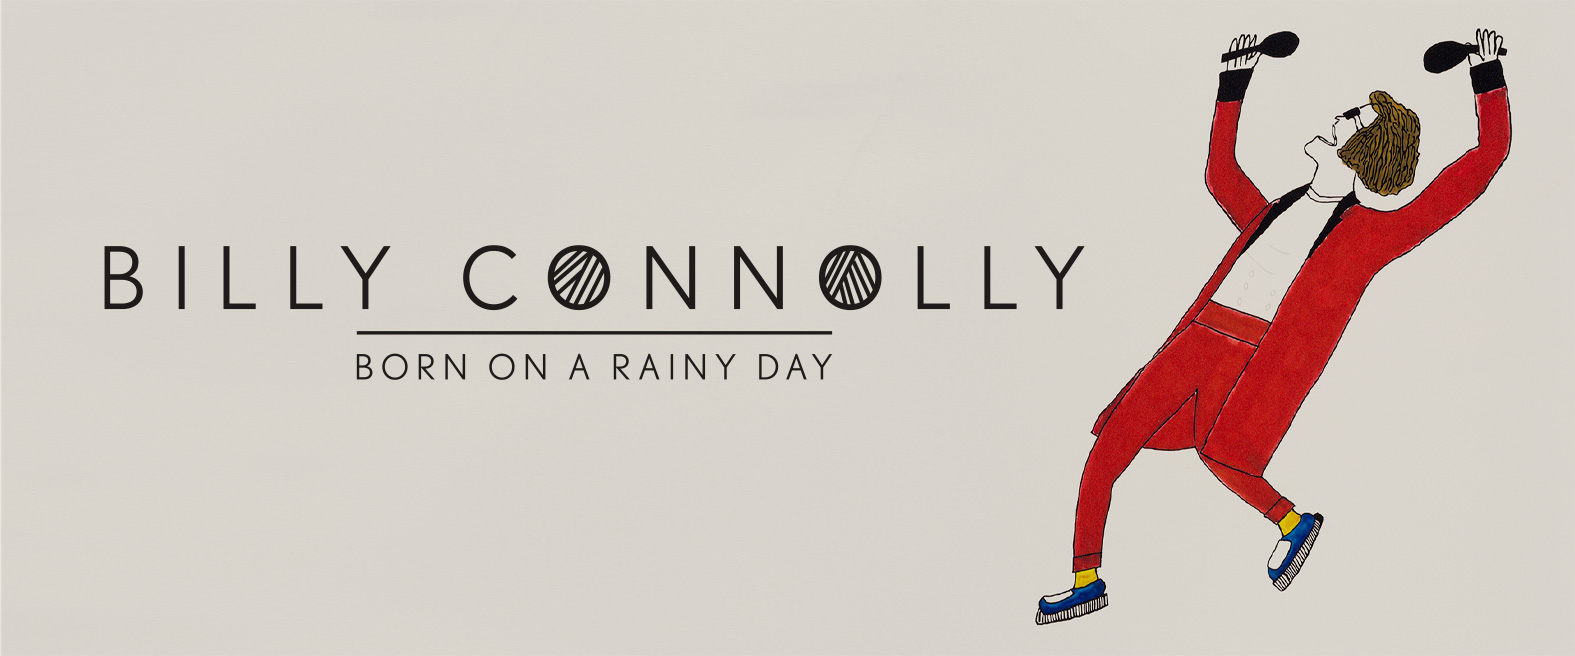 Billy Connolly - Born on a Rainy Day